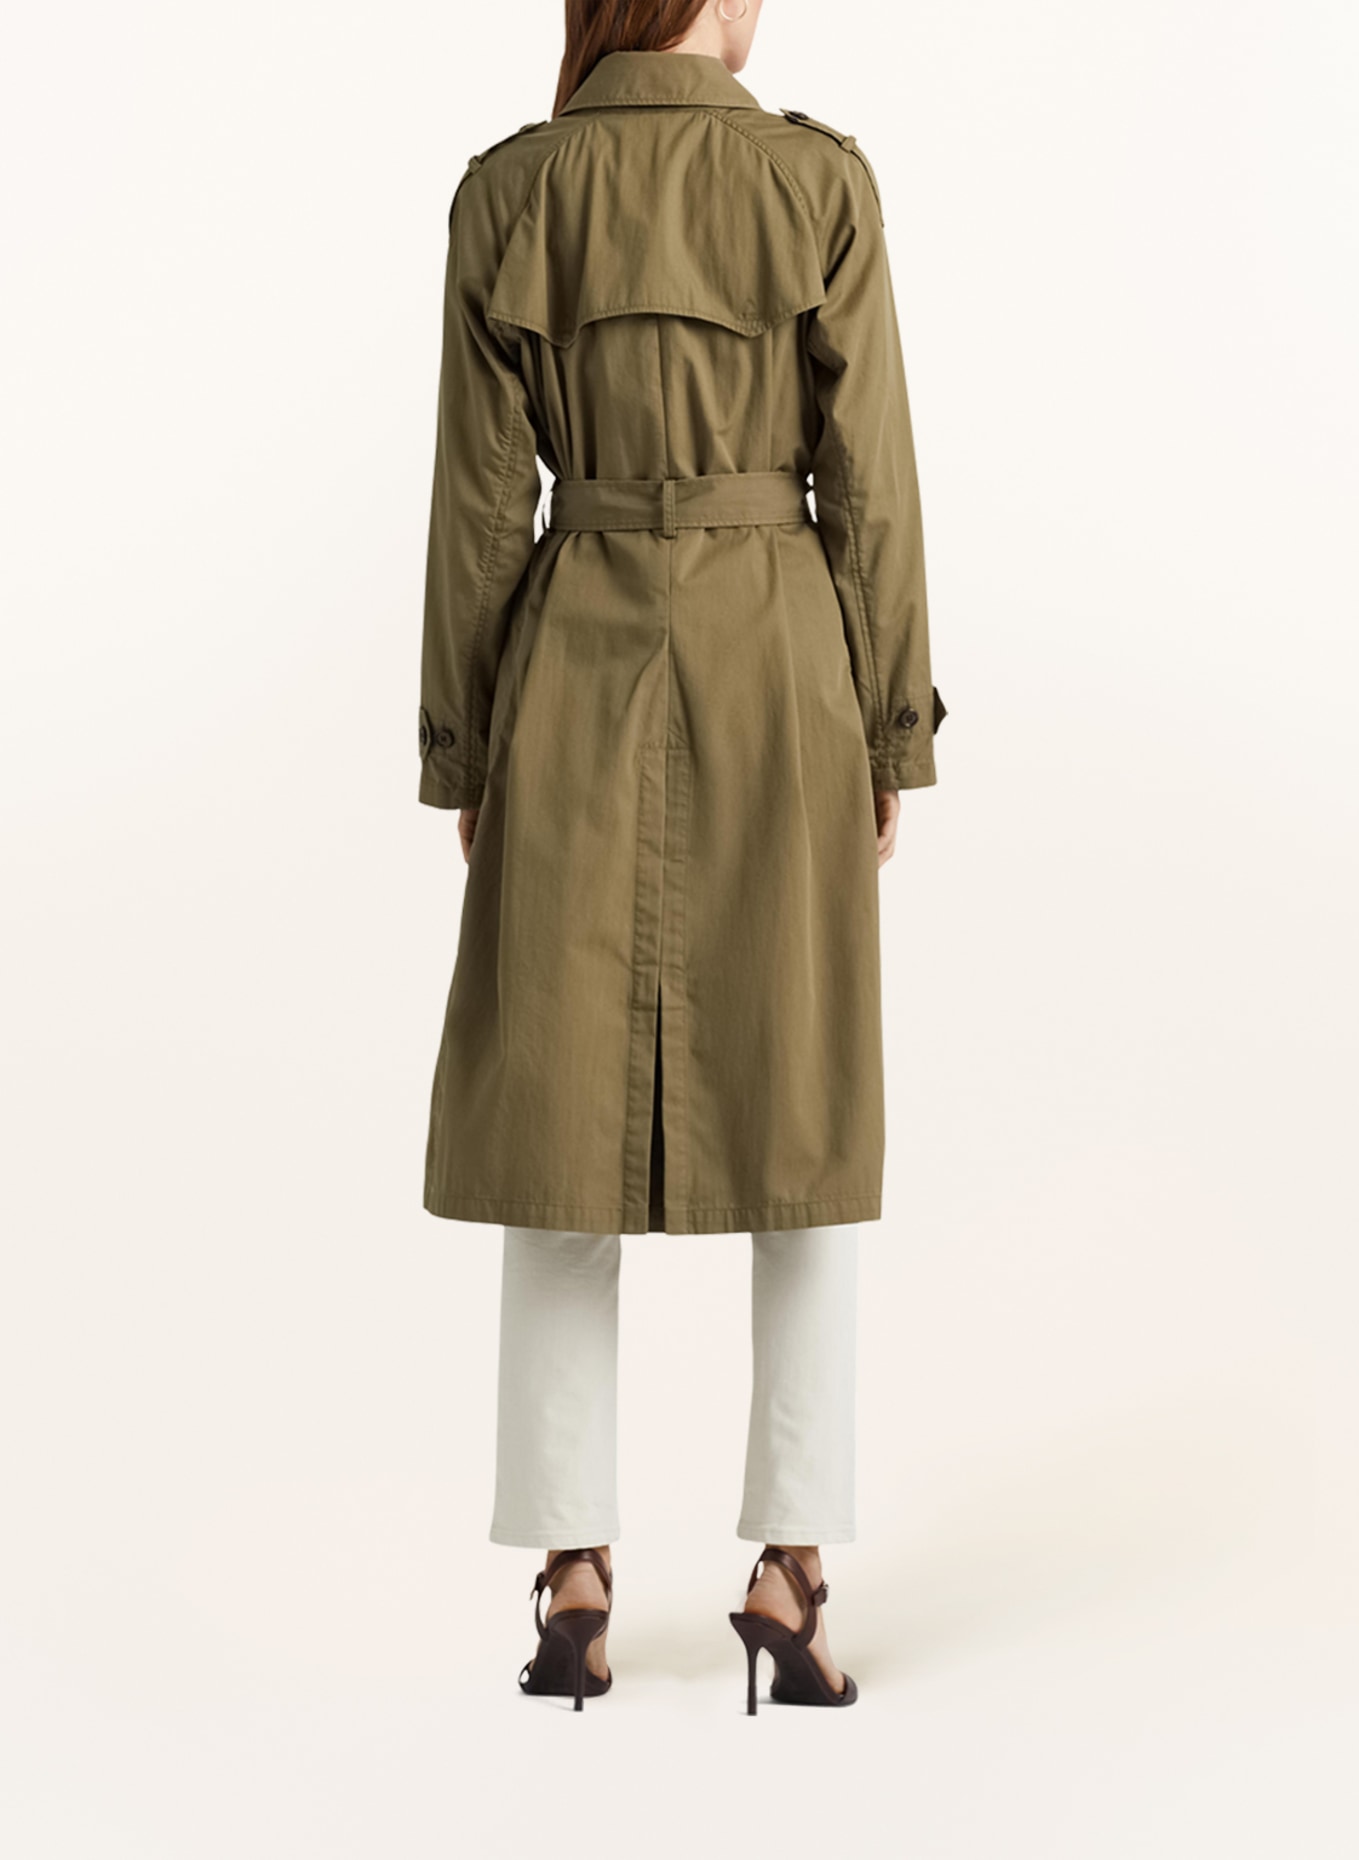 LAUREN RALPH LAUREN Trench coat, Color: OLIVE (Image 3)